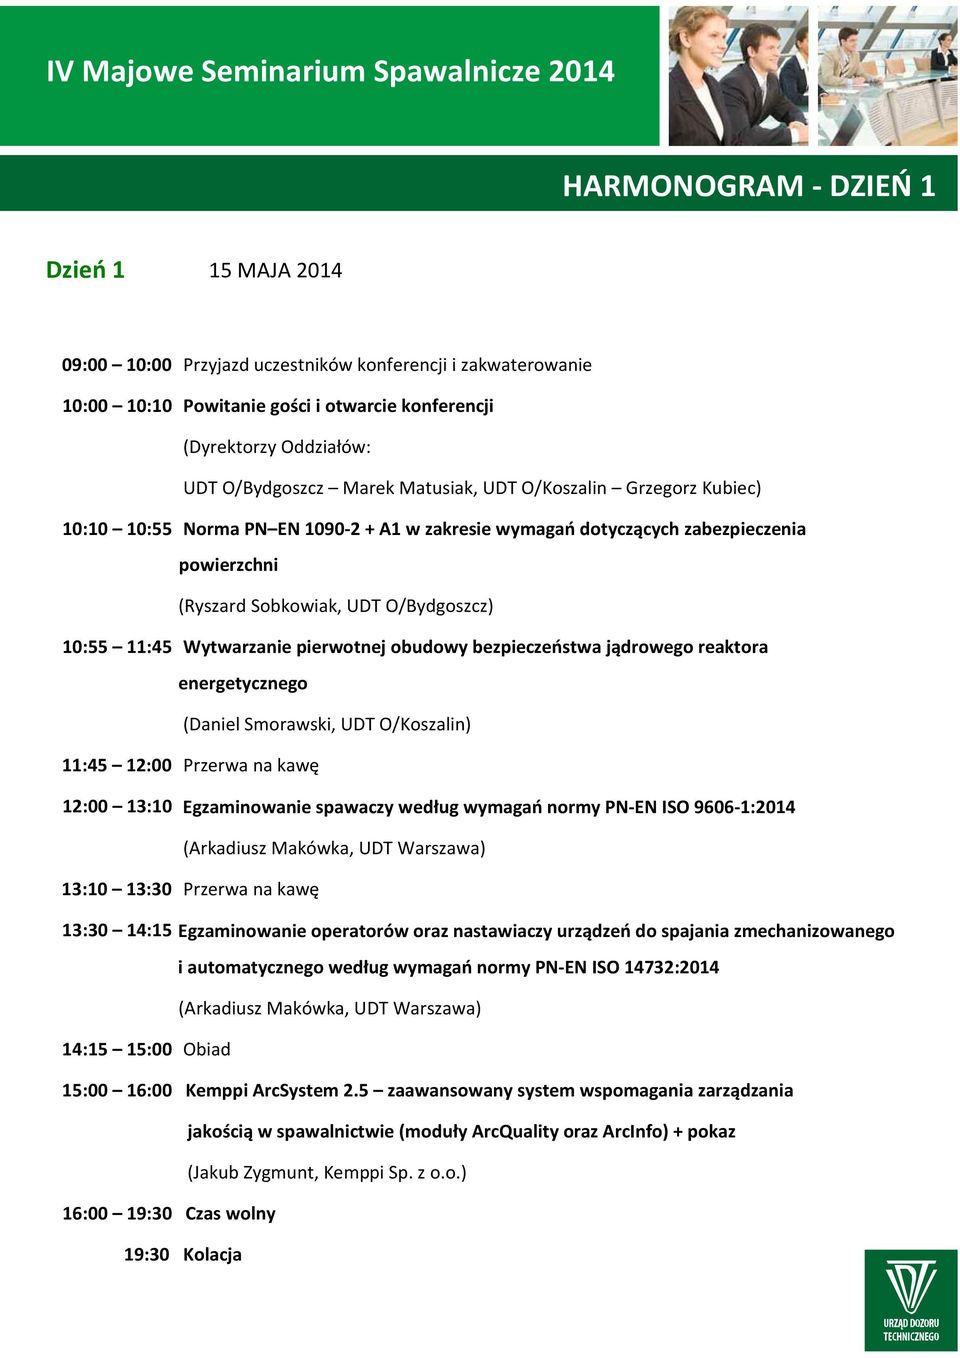 Wytwarzanie pierwotnej obudowy bezpieczeństwa jądrowego reaktora energetycznego (Daniel Smorawski, UDT O/Koszalin) 11:45 12:00 Przerwa na kawę 12:00 13:10 Egzaminowanie spawaczy według wymagań normy